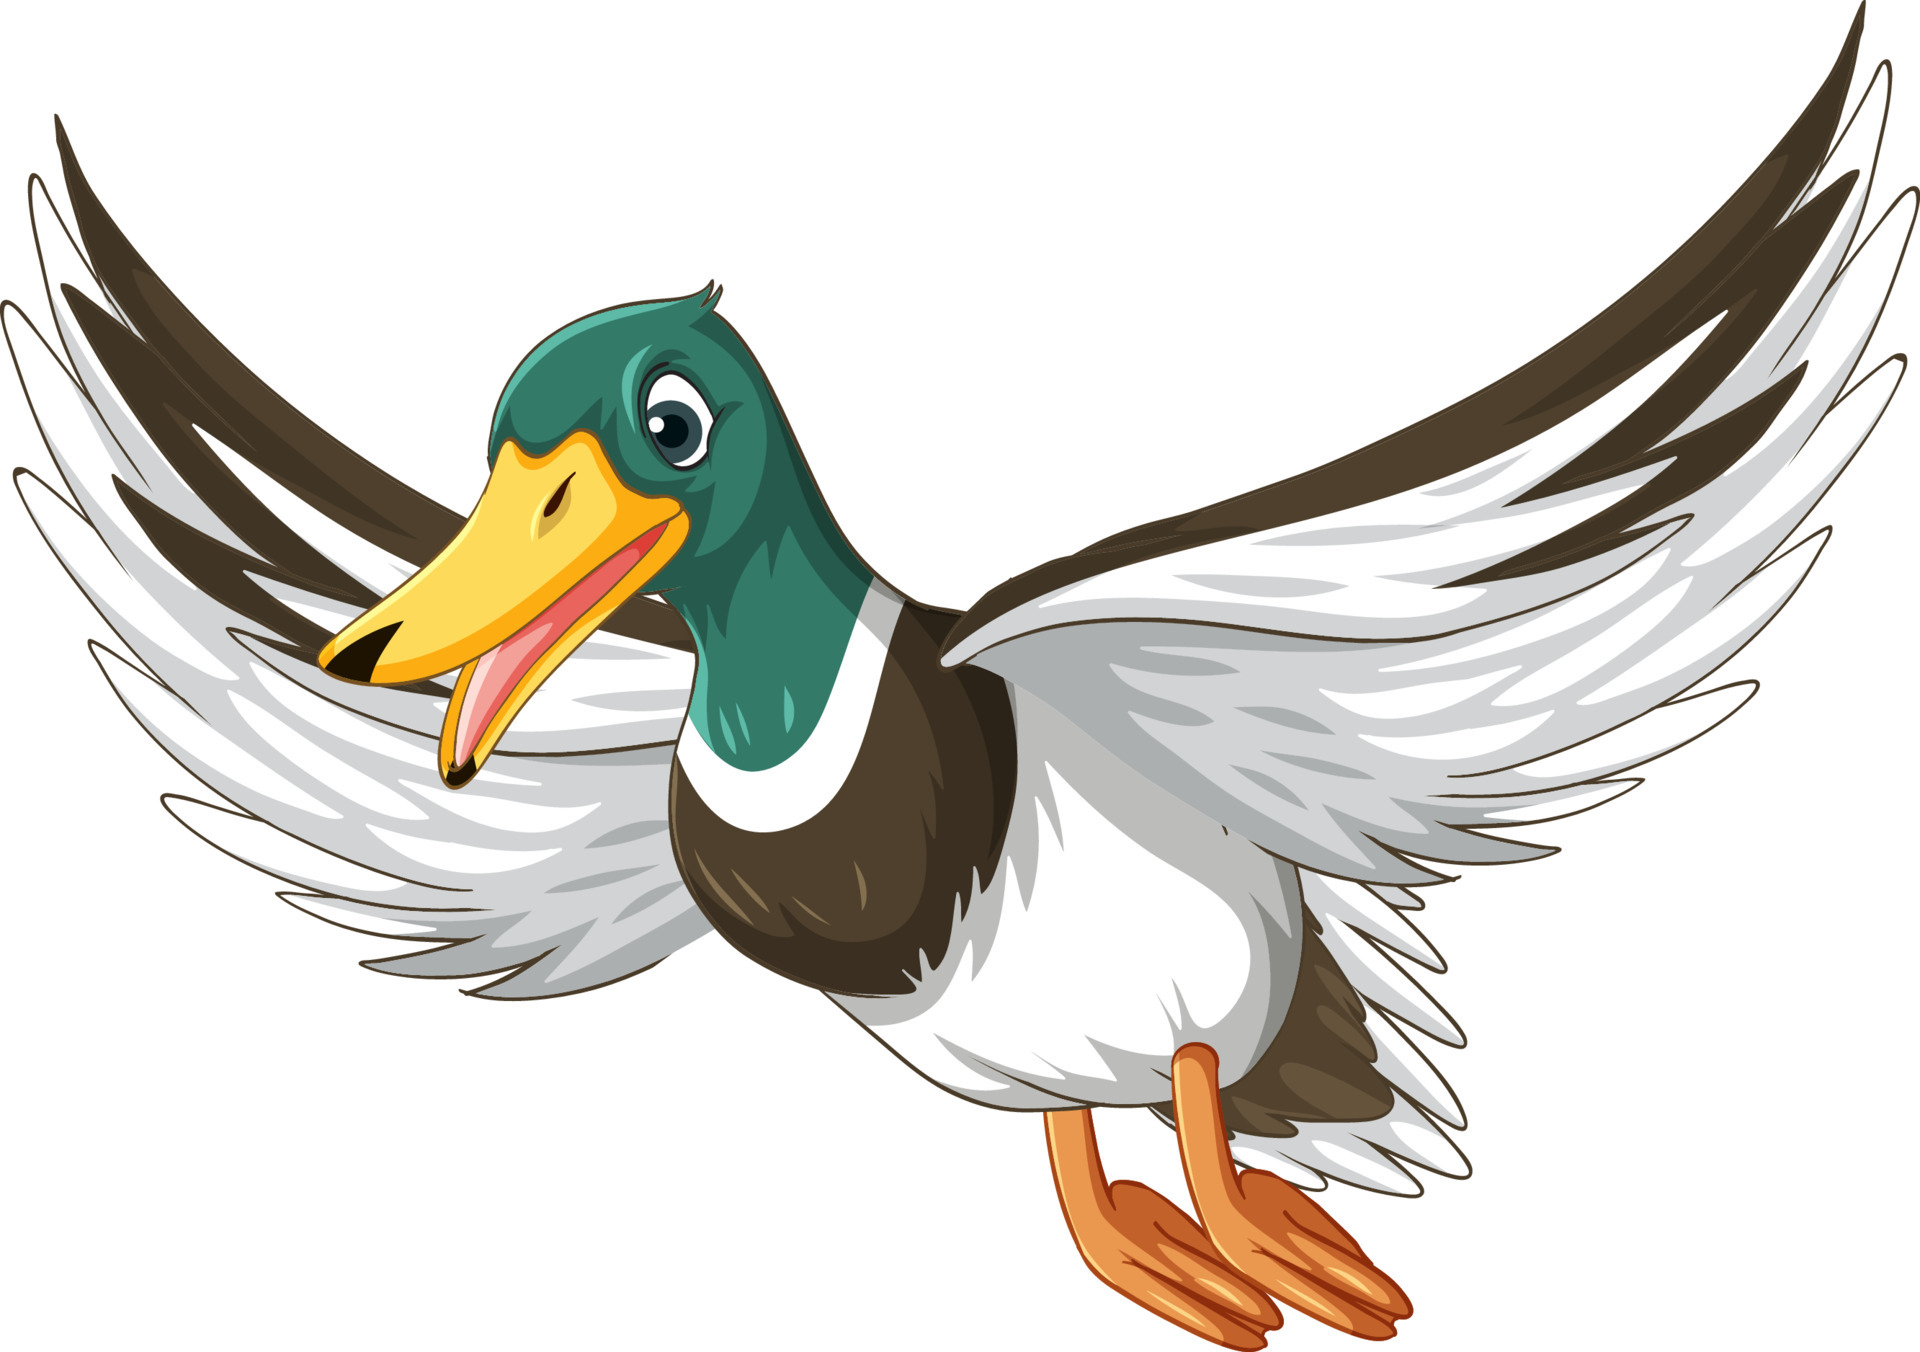 Duck with green head cartoon character 7092816 Vector Art at Vecteezy